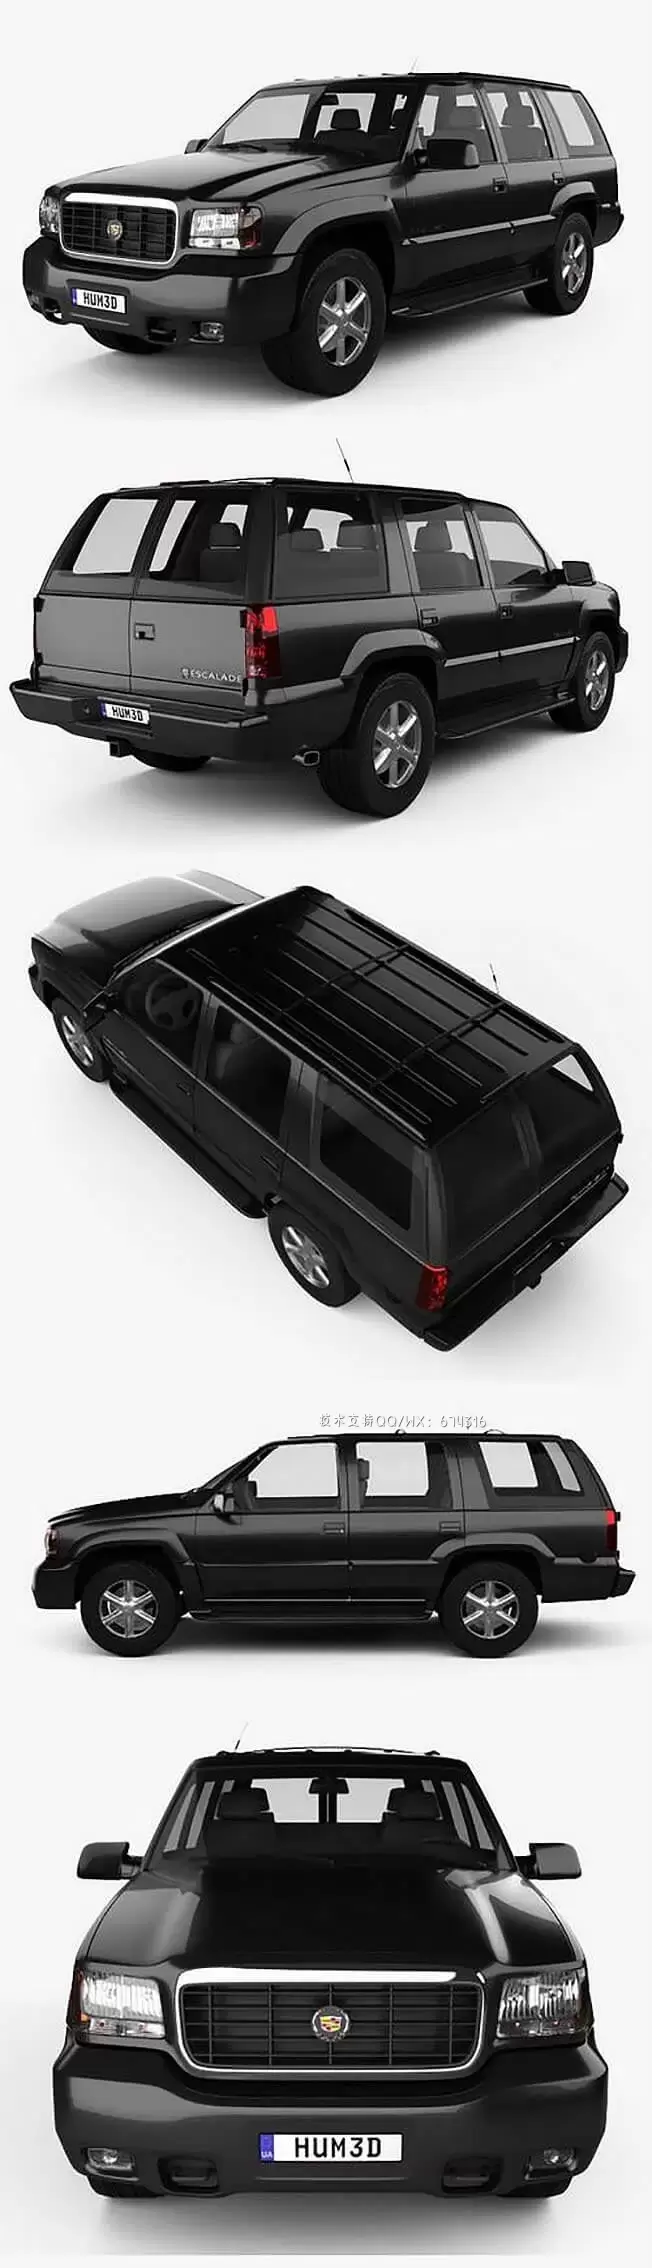 卡迪拉克 Escalade 1999 经典款硬派越野车SUV汽车3D模型下载免费下载